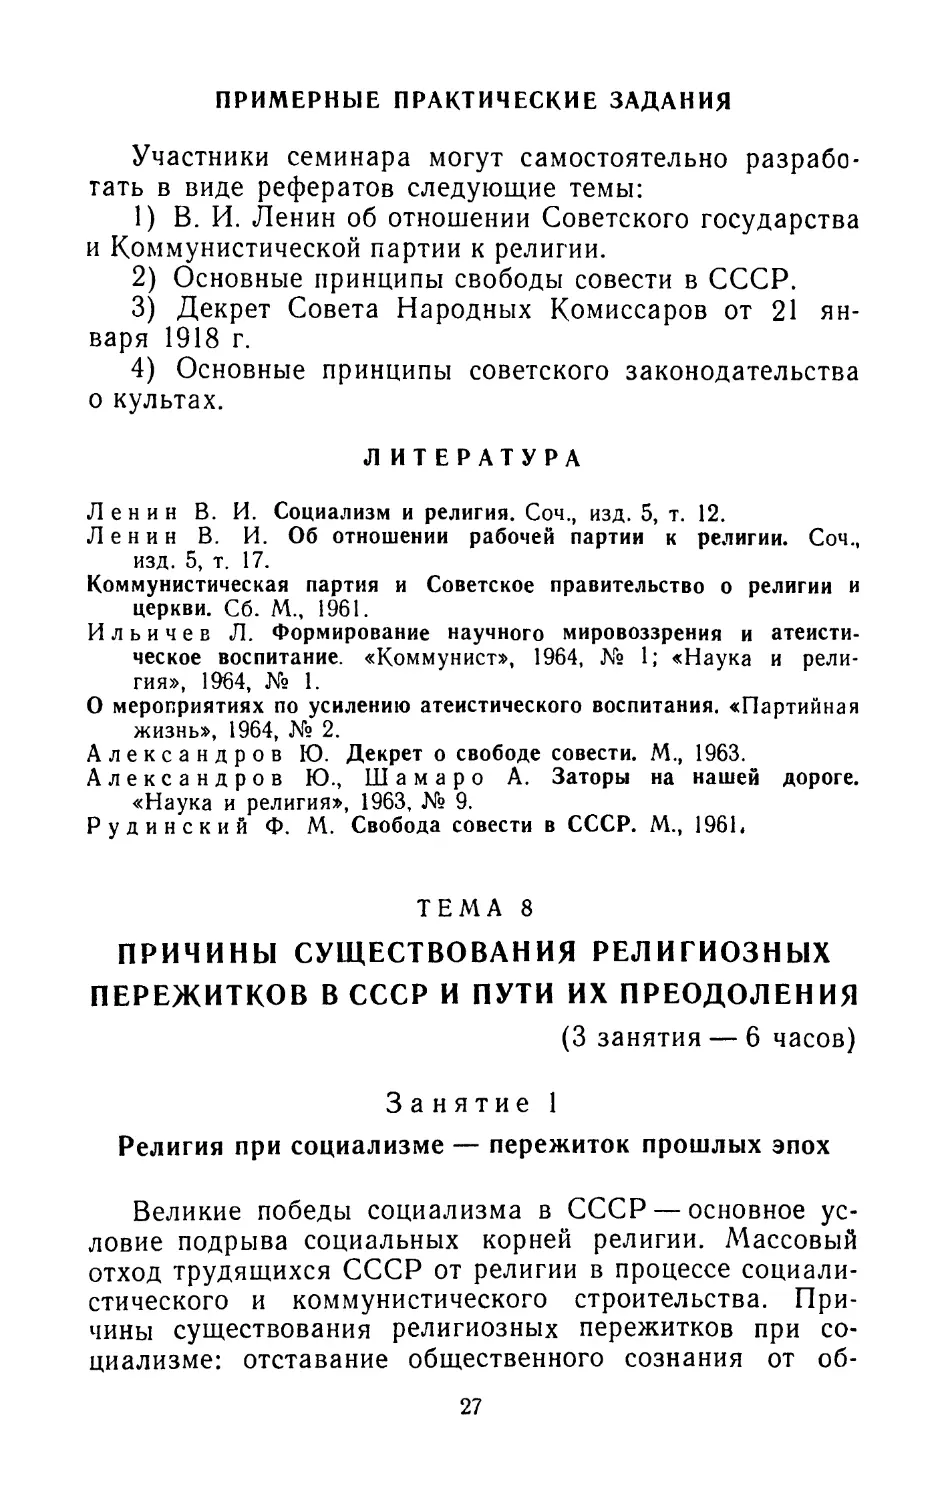 Примерные практические задания
Литература
Тема 8. Причины существования религиозных пережитков в СССР и пути их преодоления